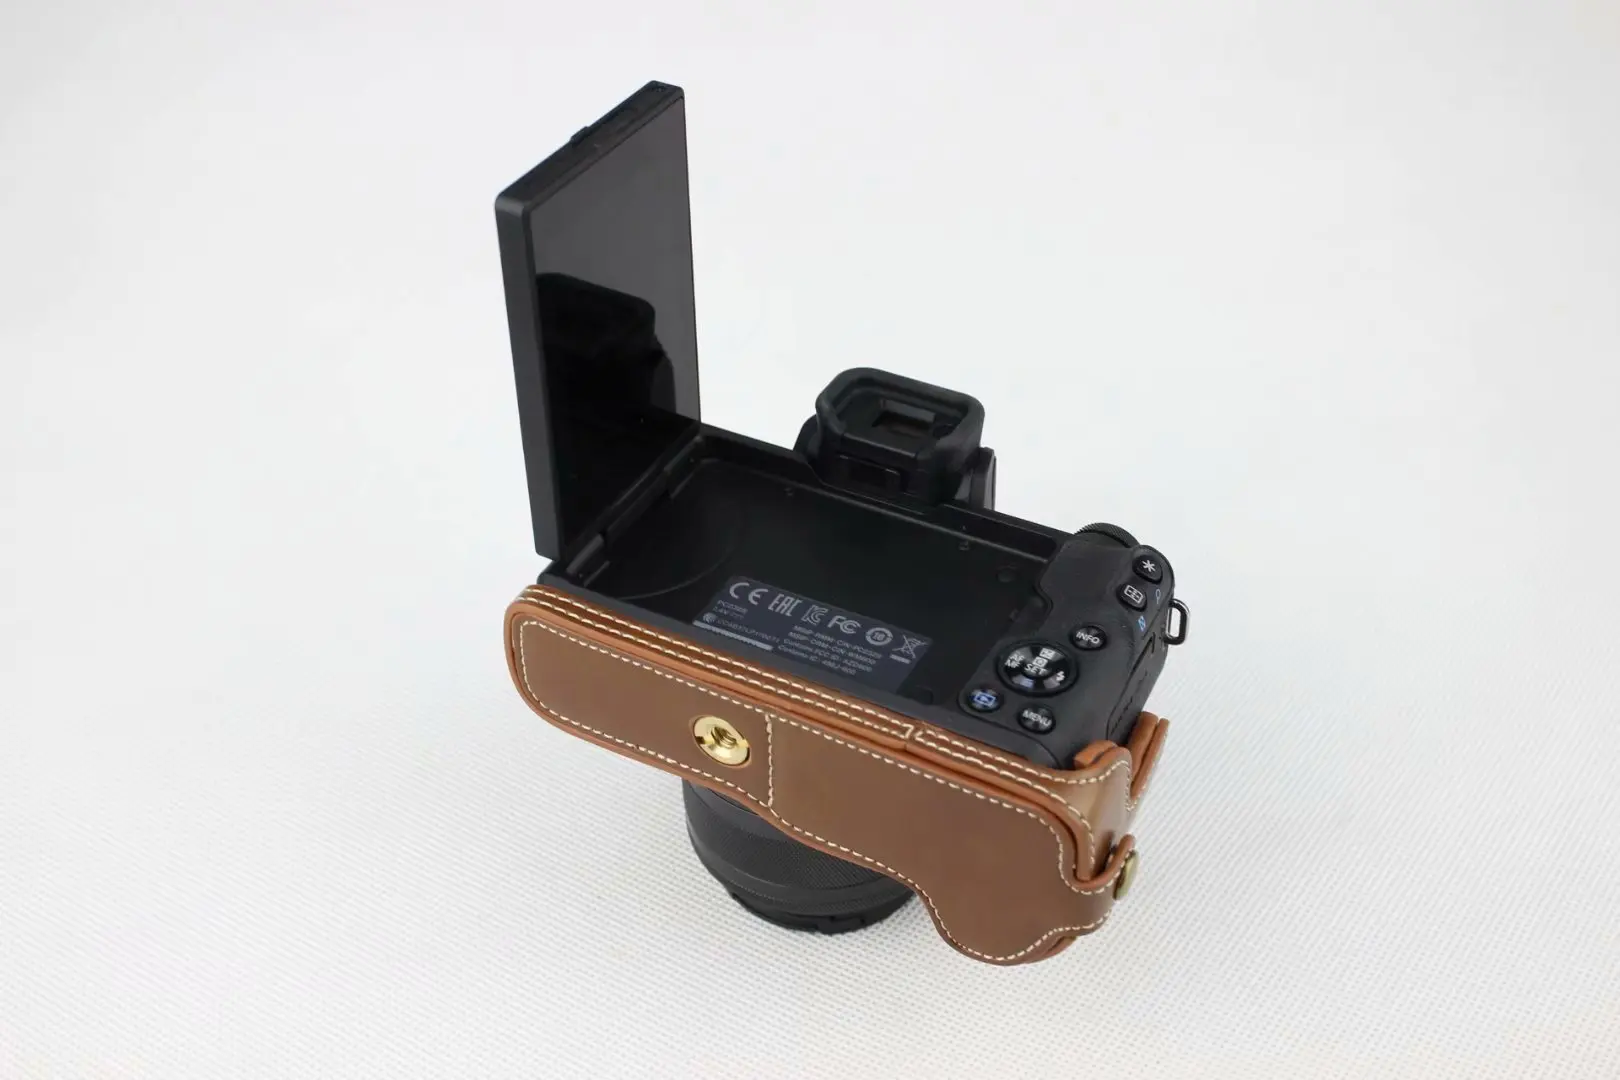 Новинка PU кожа Камера сумка для Canon EOS M50 EOSM50 половина тела крышка открыта аккумулятор черный Кофе коричневый